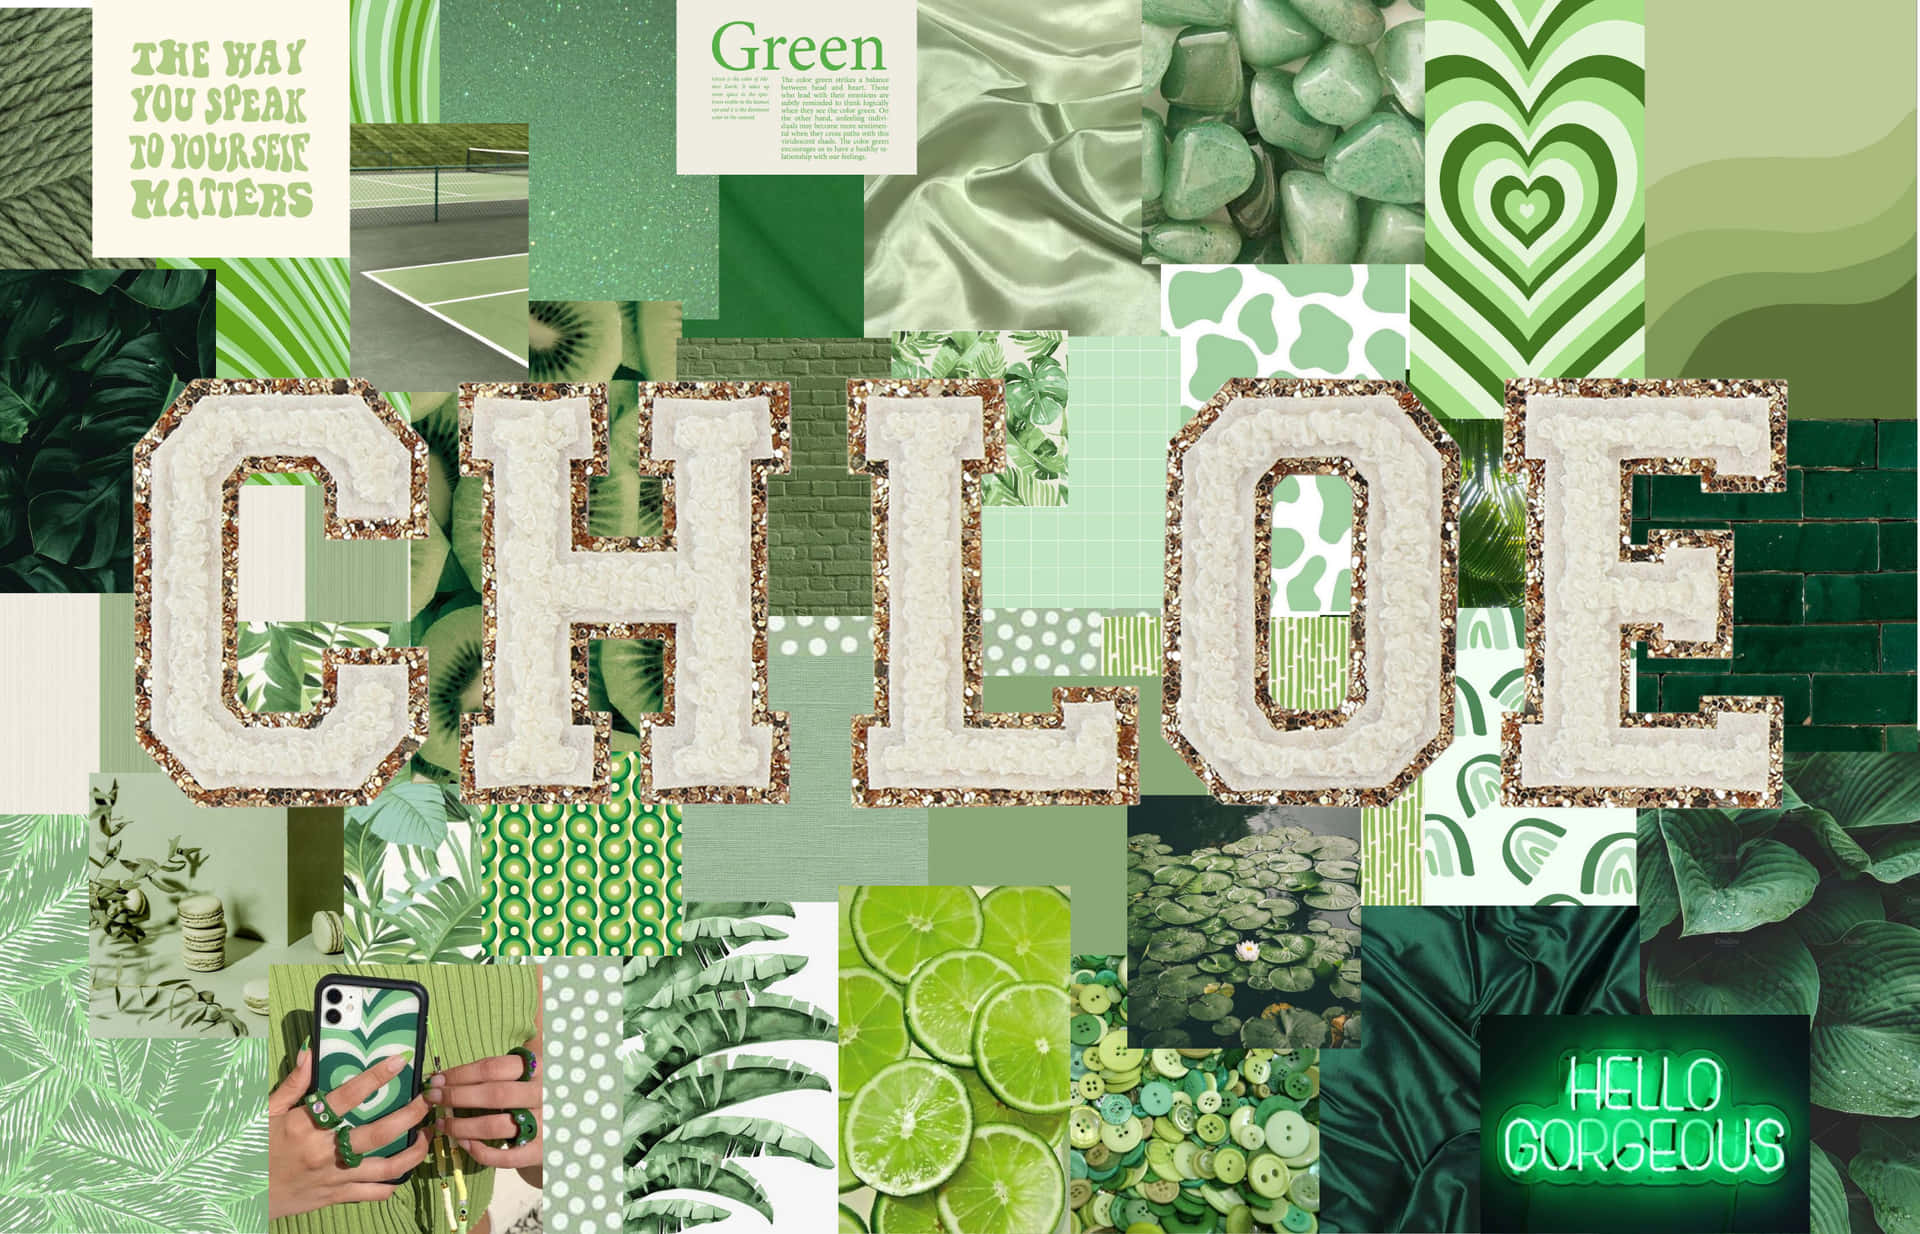 Einecollage Von Grünen Und Weißen Bildern Mit Dem Wort Chloe Wallpaper